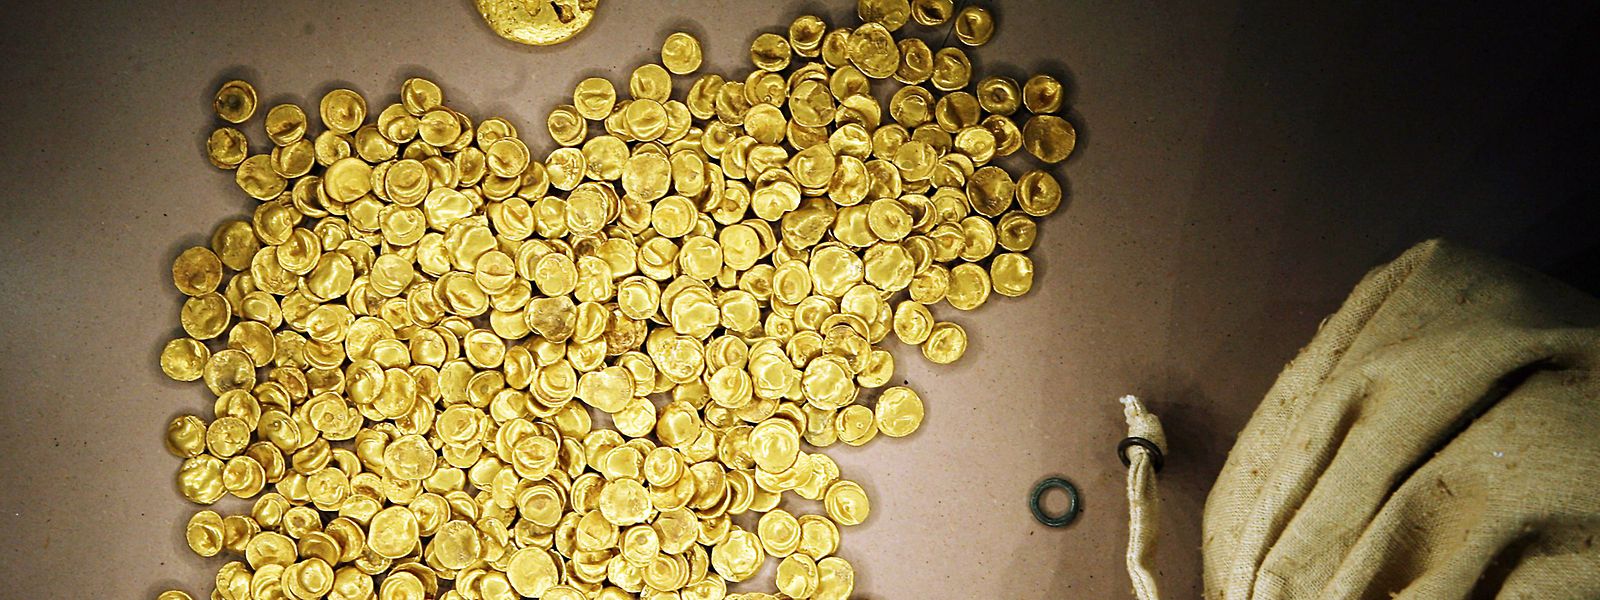 Der größte keltische Goldfund des 20. Jahrhunderts wurde 1999 bei Manching gefunden. Nun wurde der Goldschatz von Einbrechern gestohlen. 